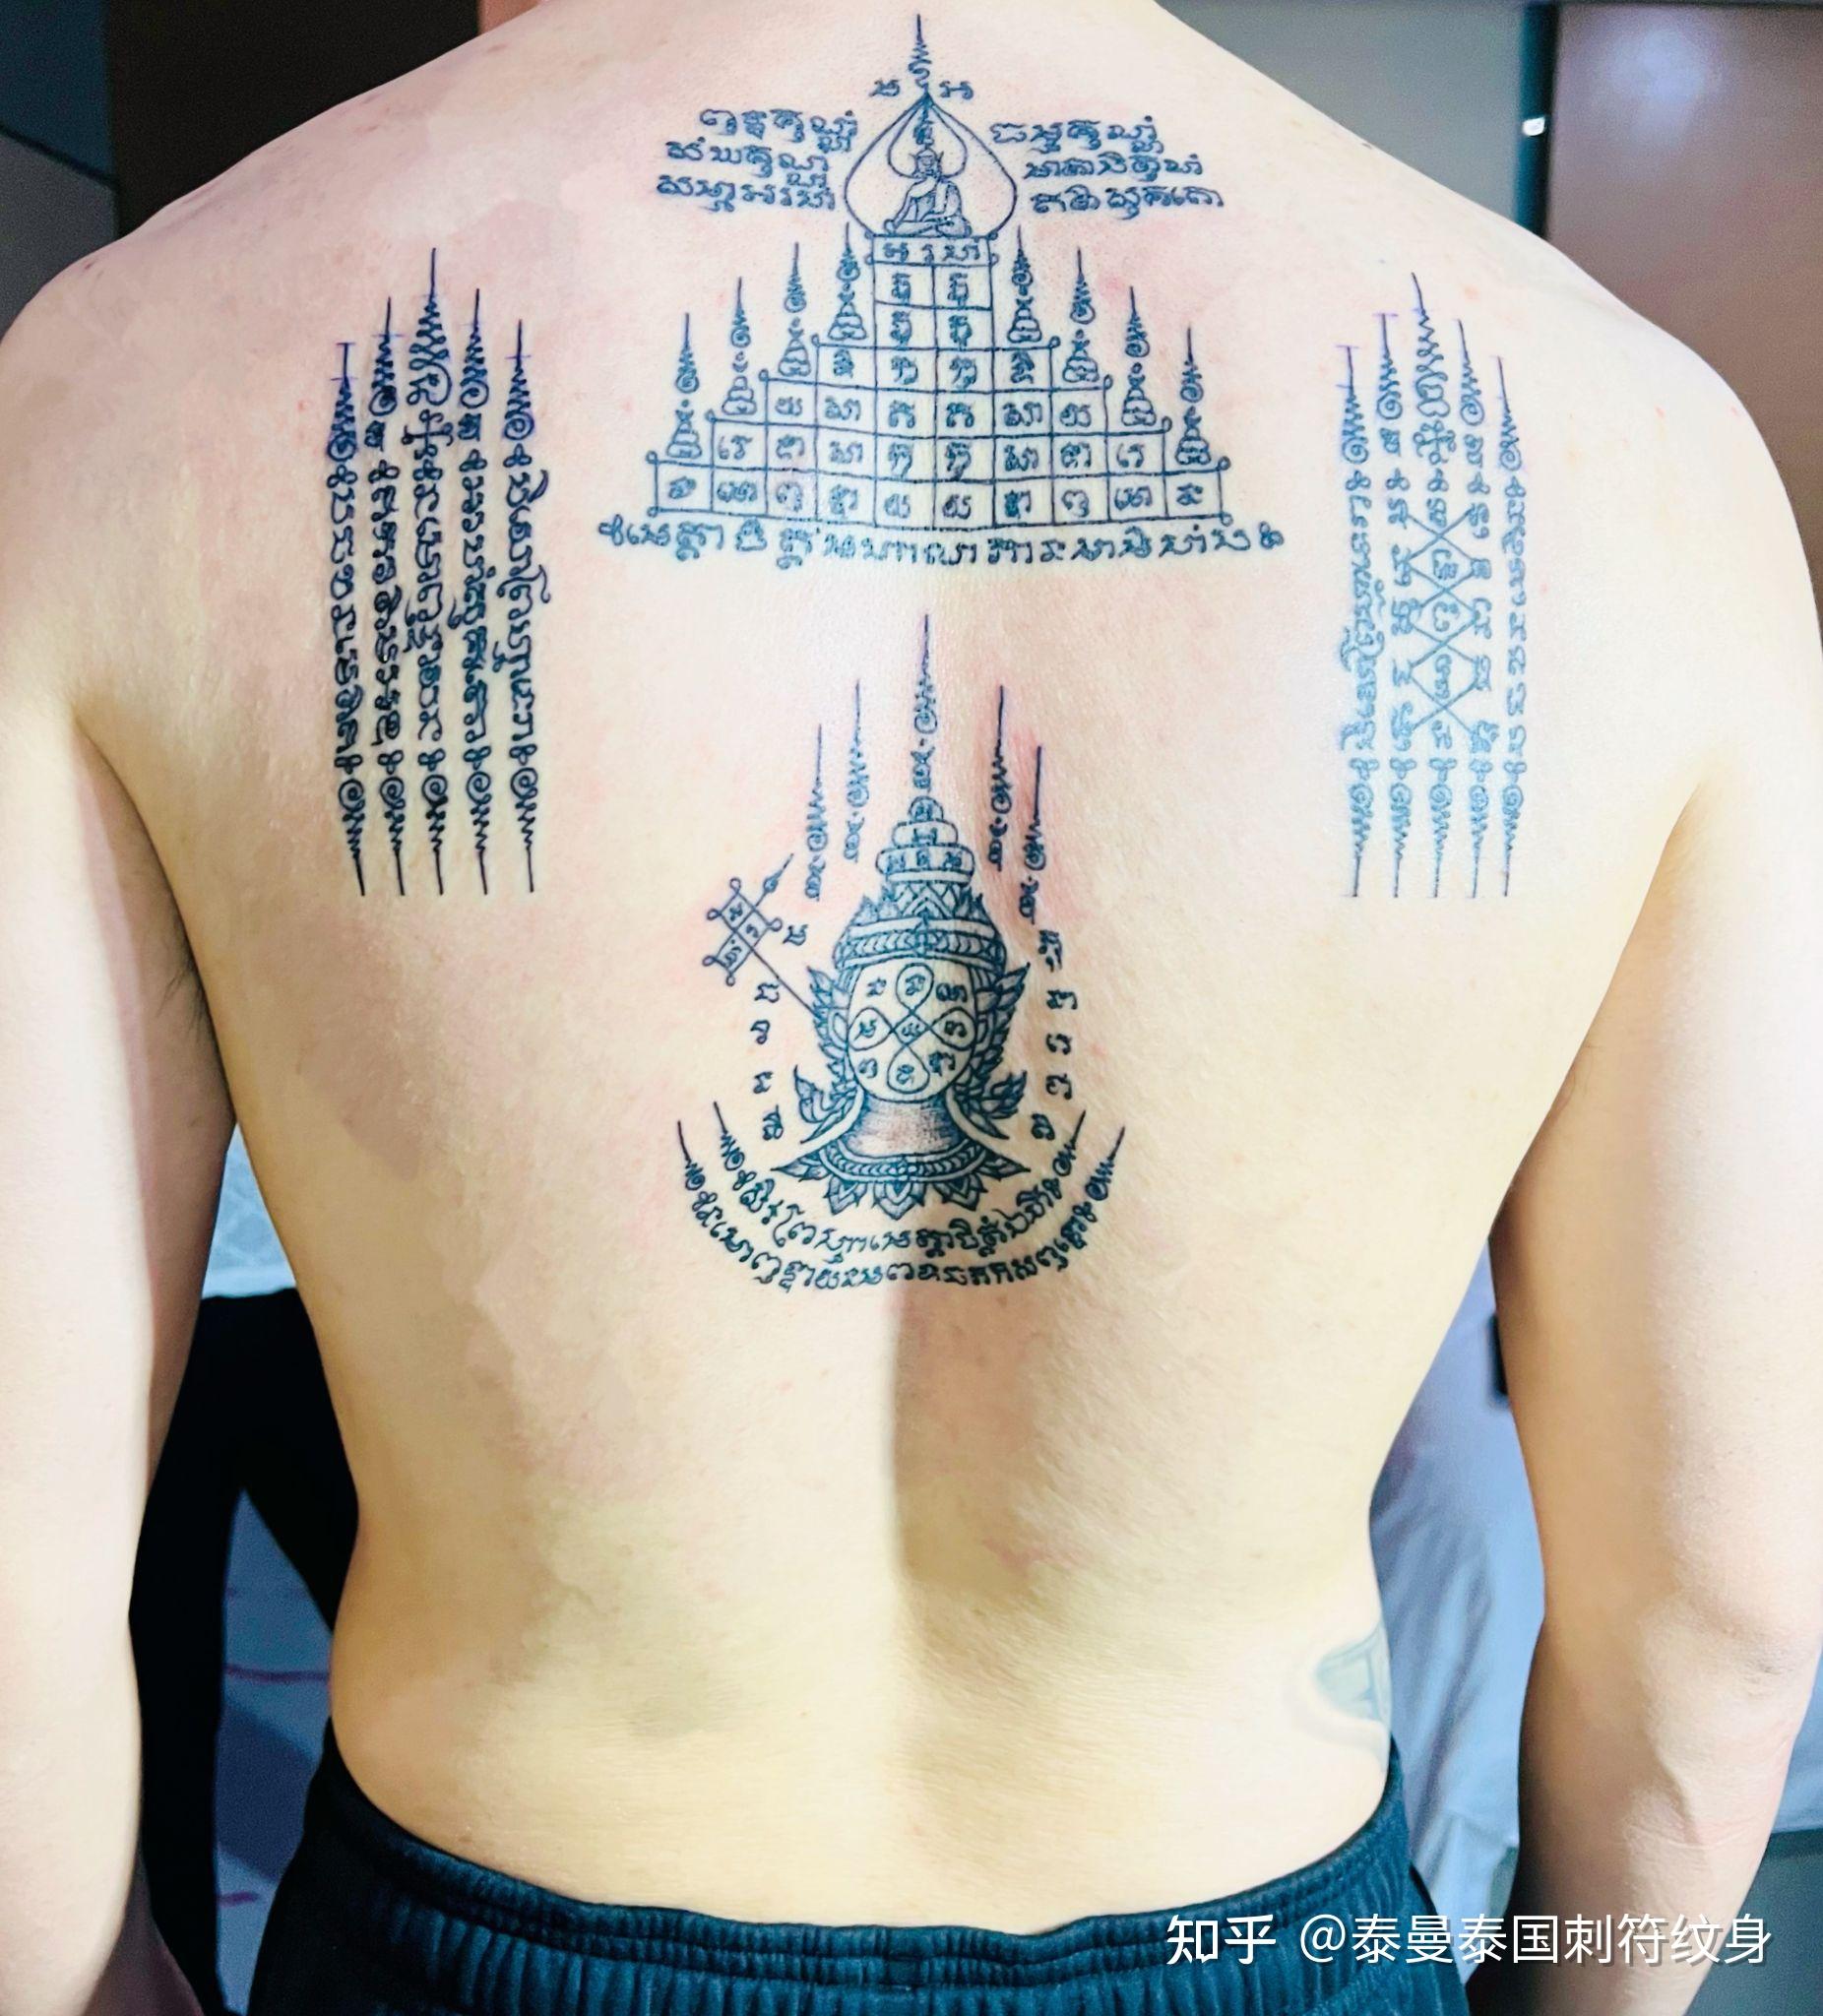 曼古王佛牌介绍 - 带你走近神秘的泰国纹身泰国刺符 -佛牌知道